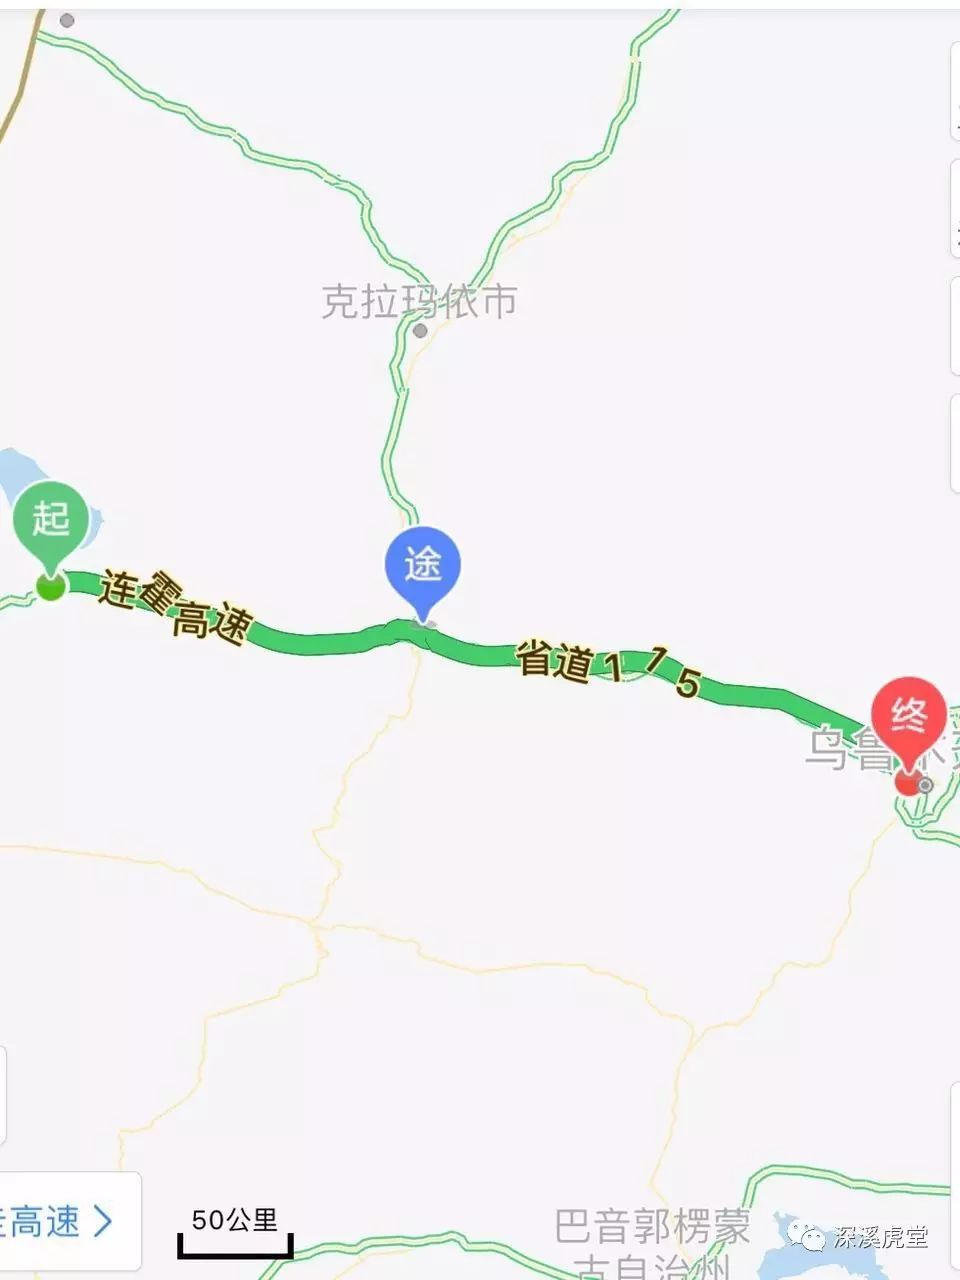 精河-奎屯-101省道-乌鲁木齐(500公里)